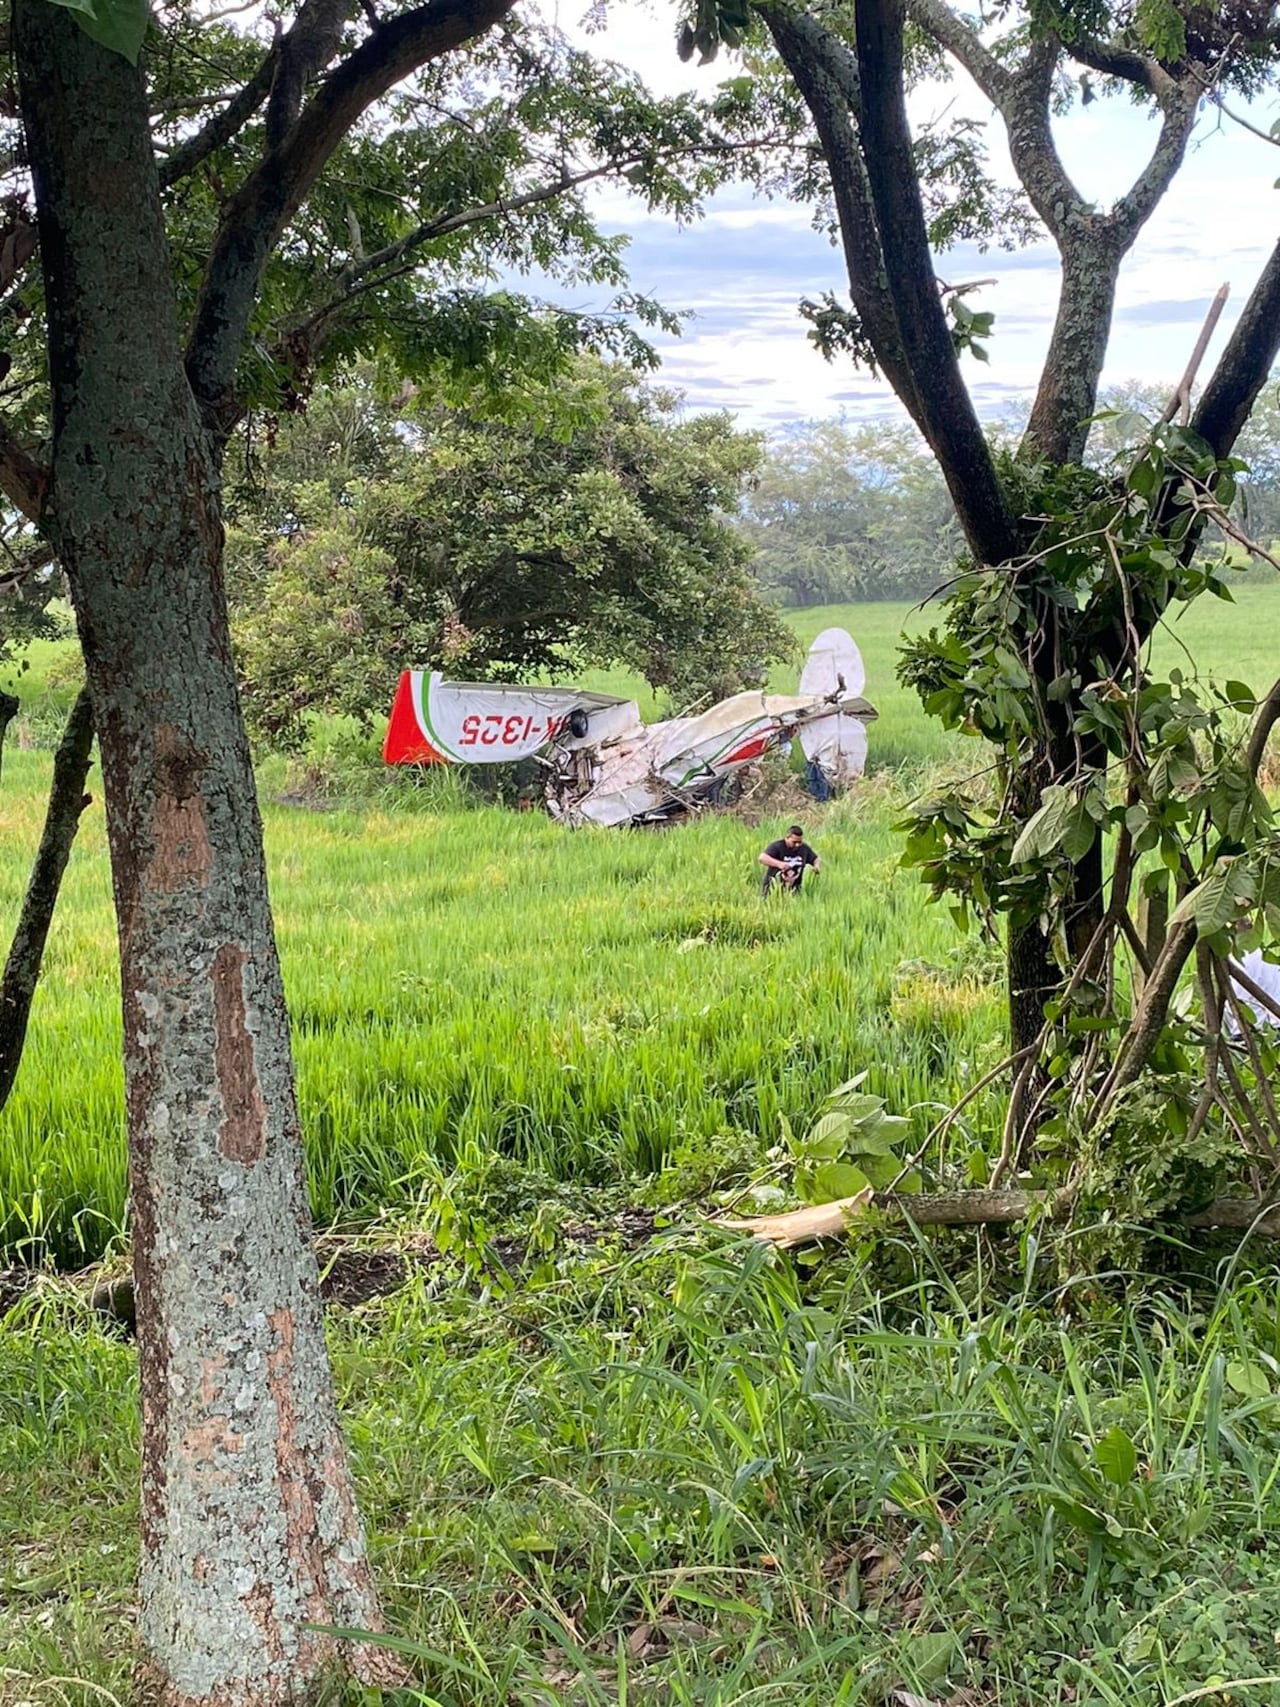 El piloto resultó lesionado, por fortuna no hubo víctimas fatales.